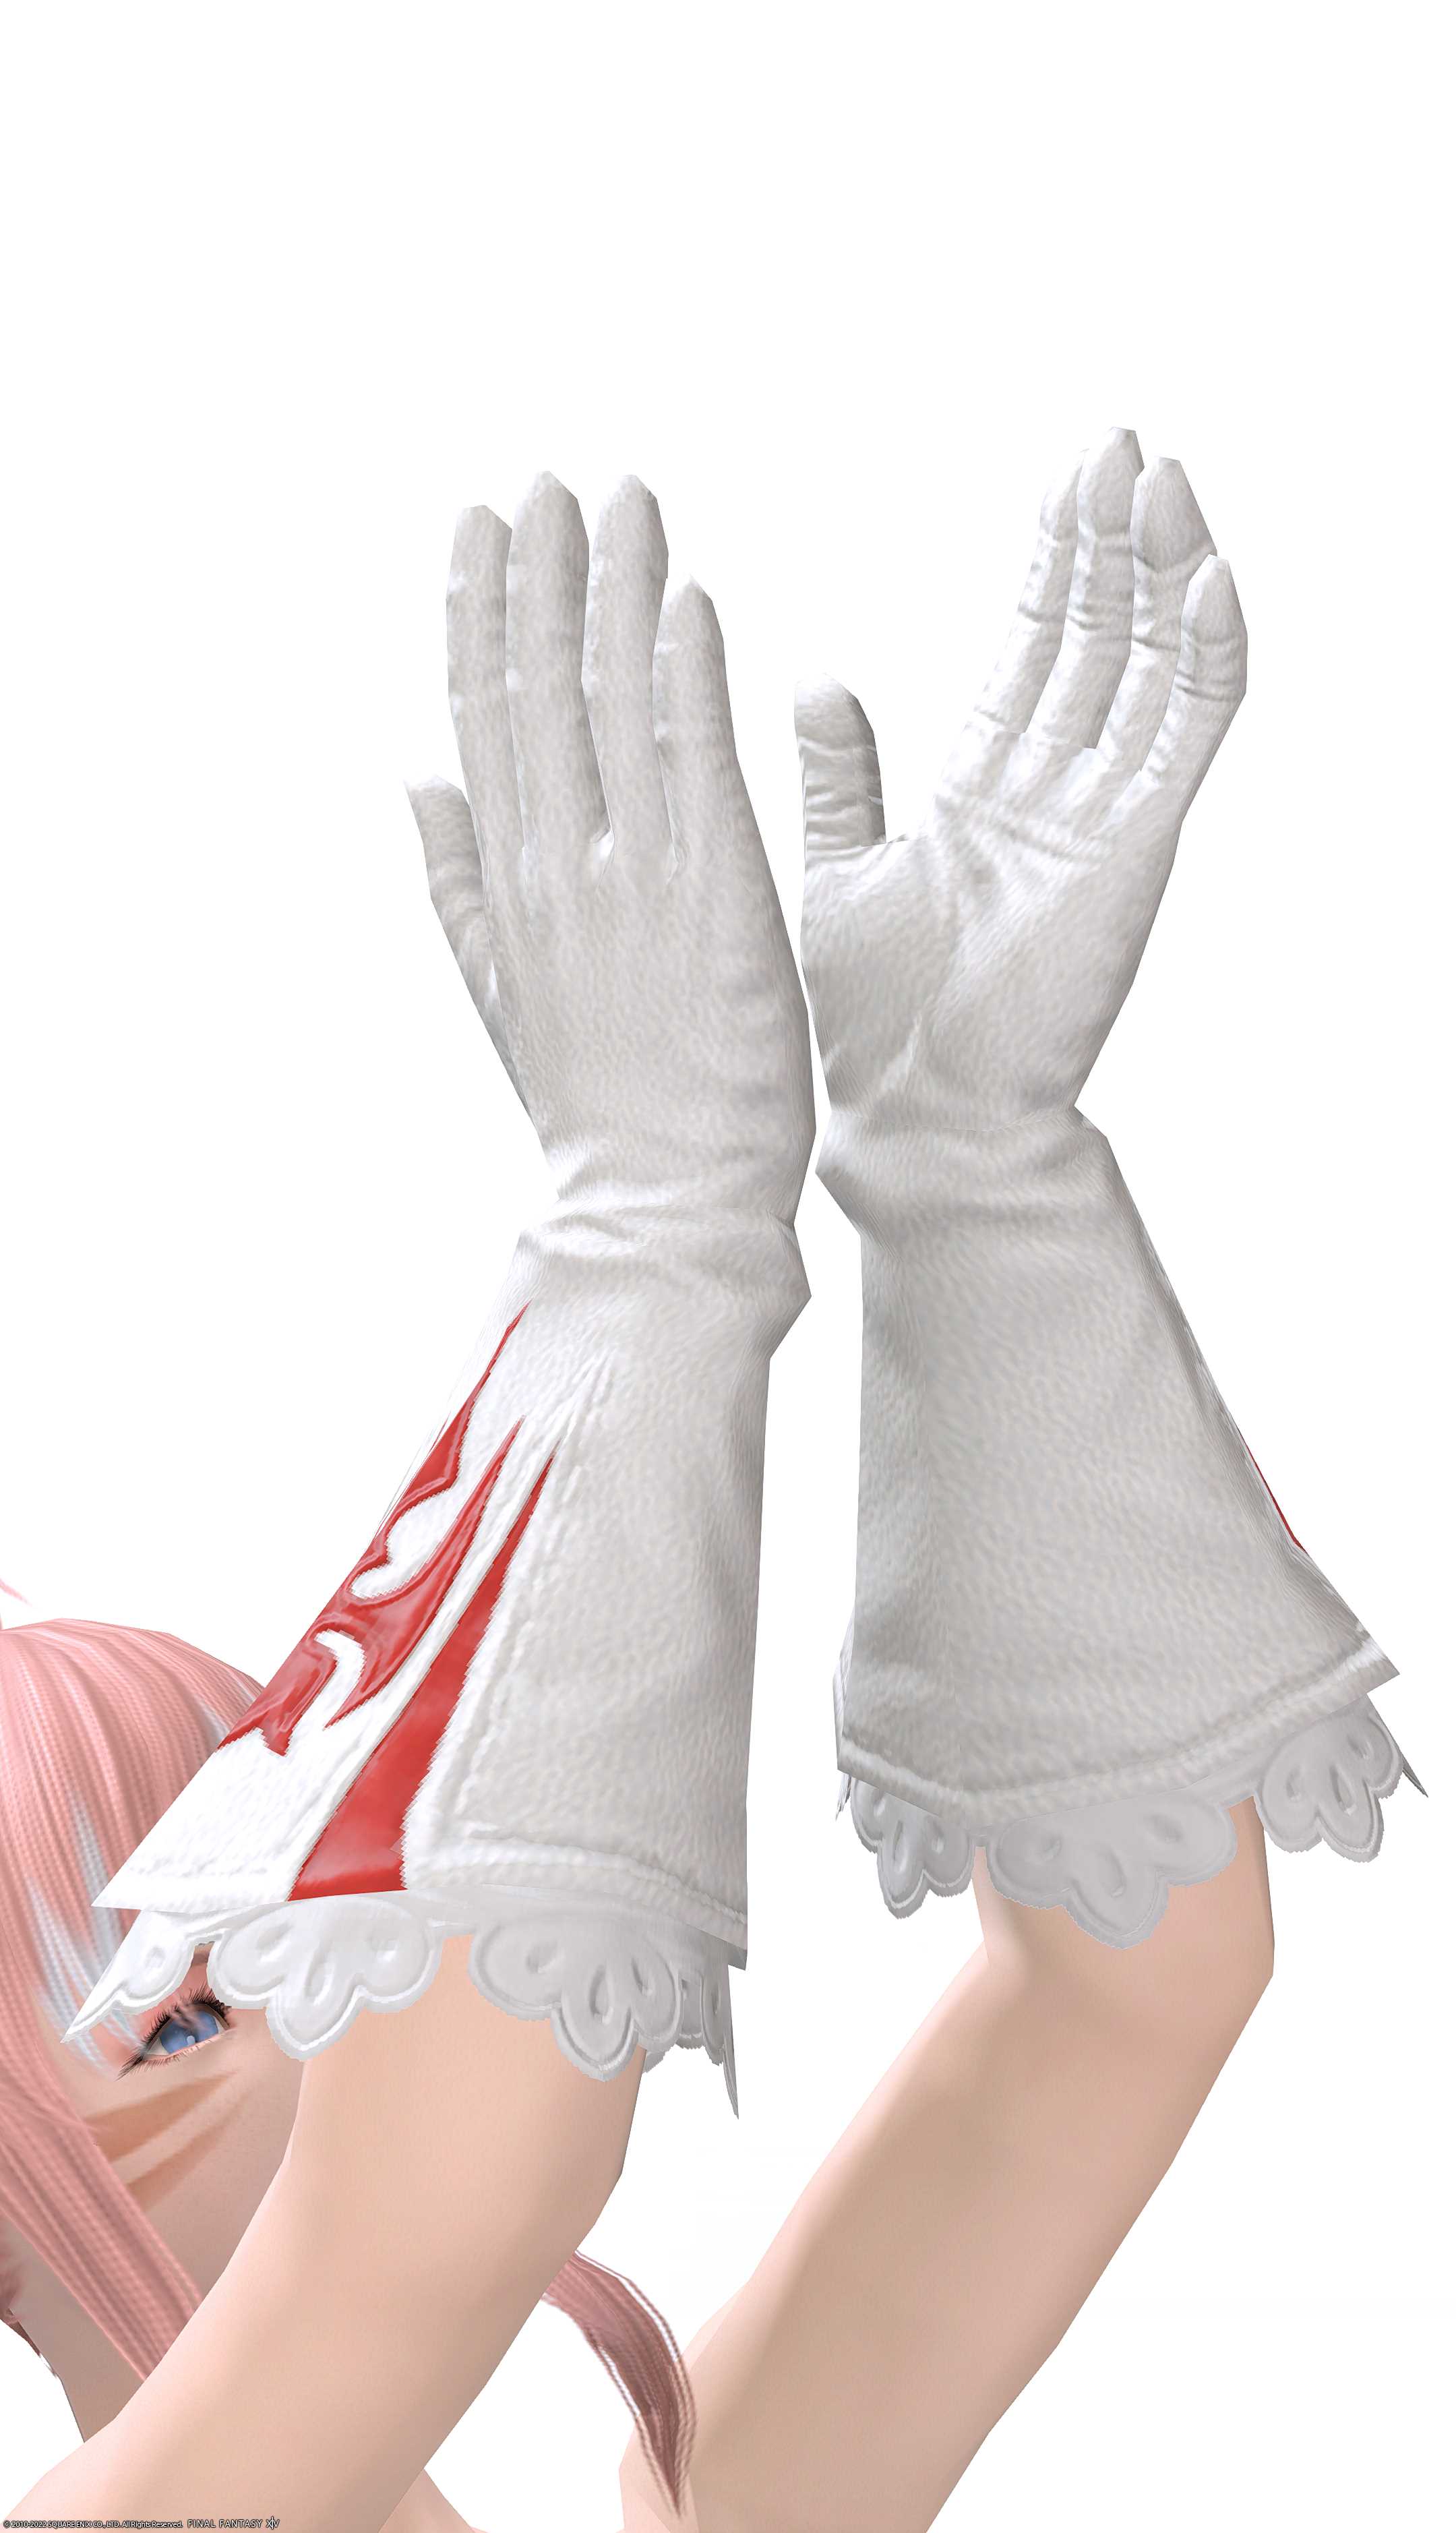 イシュガルディアン・チャプレングローブ | FF14ミラプリ - Ishgardian Chaplain's Gloves - 手袋/グローブ